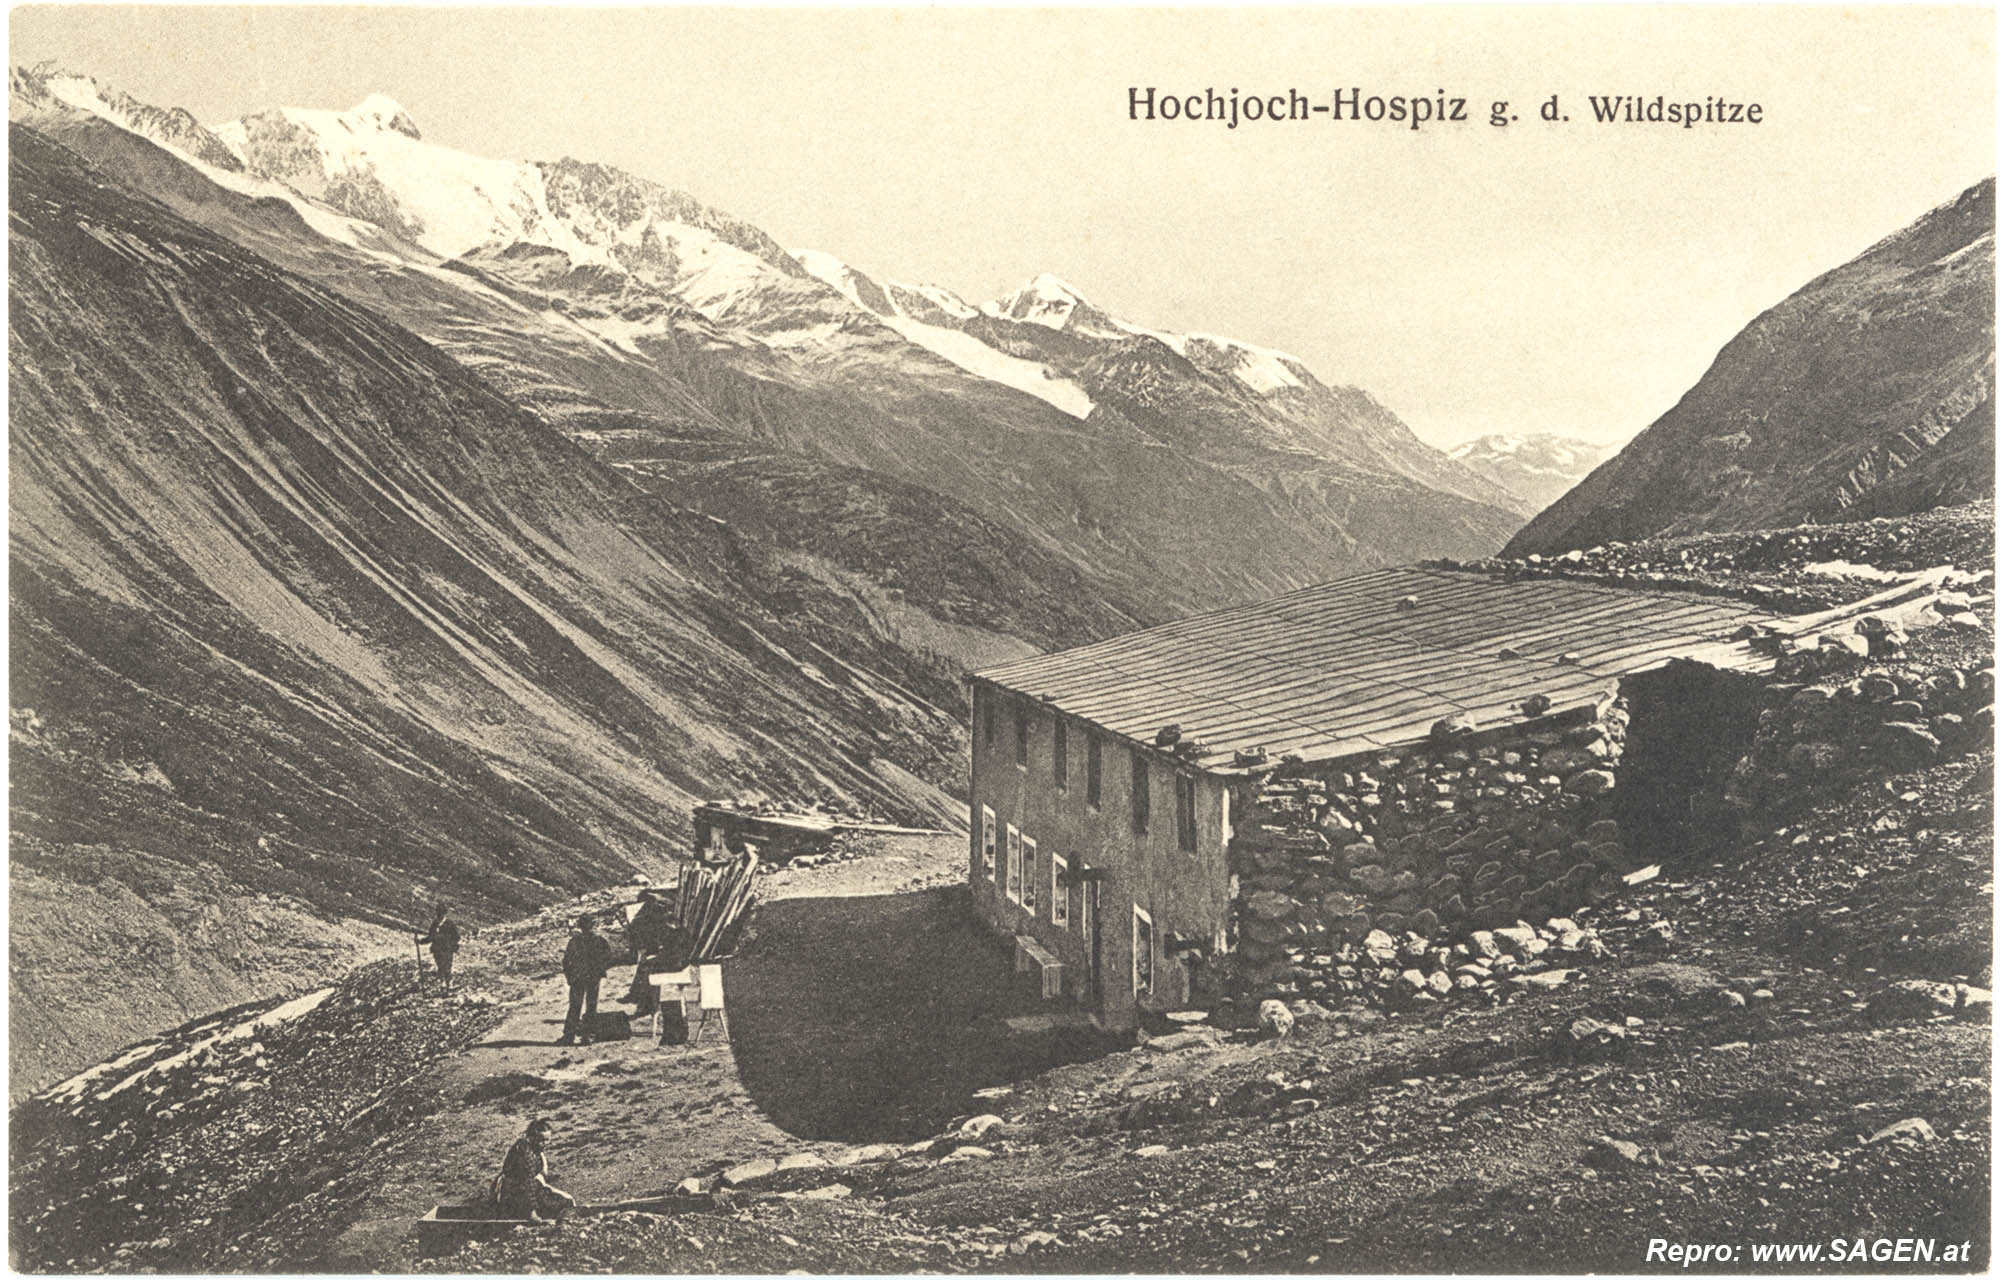 Hochjoch-Hospiz gegen die Wildspitze